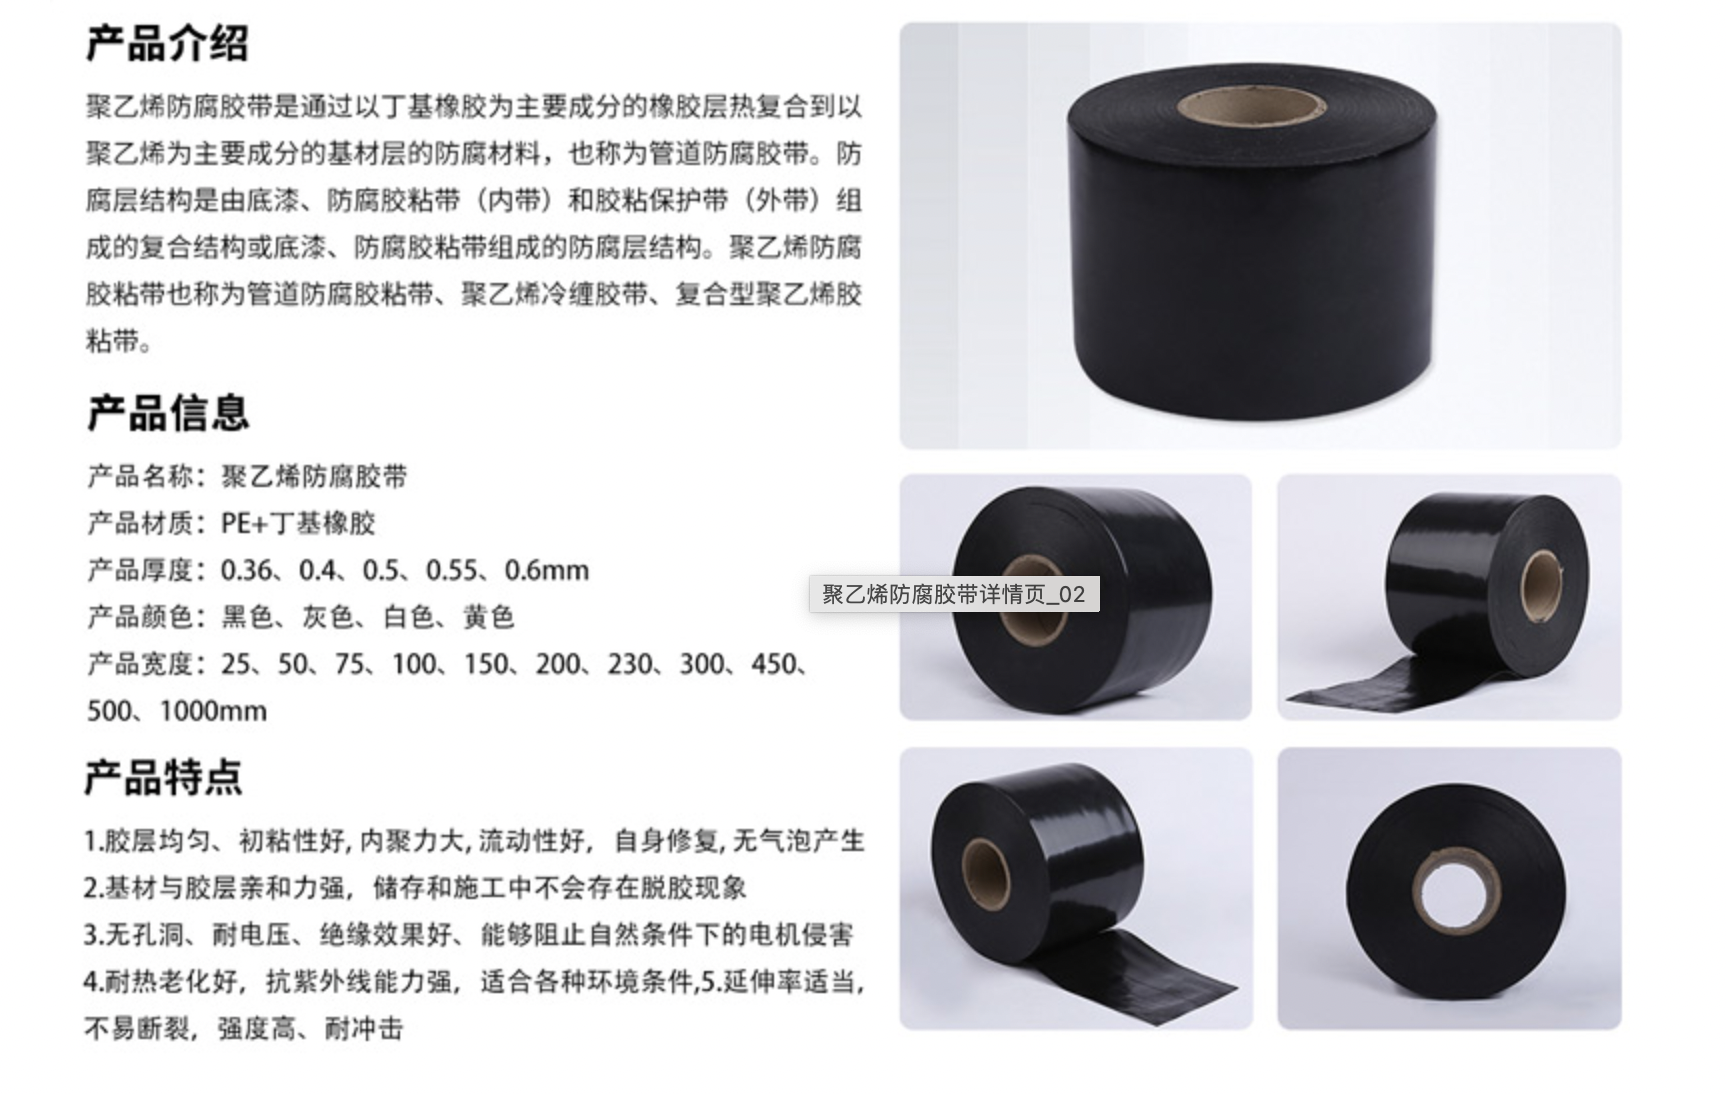 Polyethylene anti-corrosion tape introduction